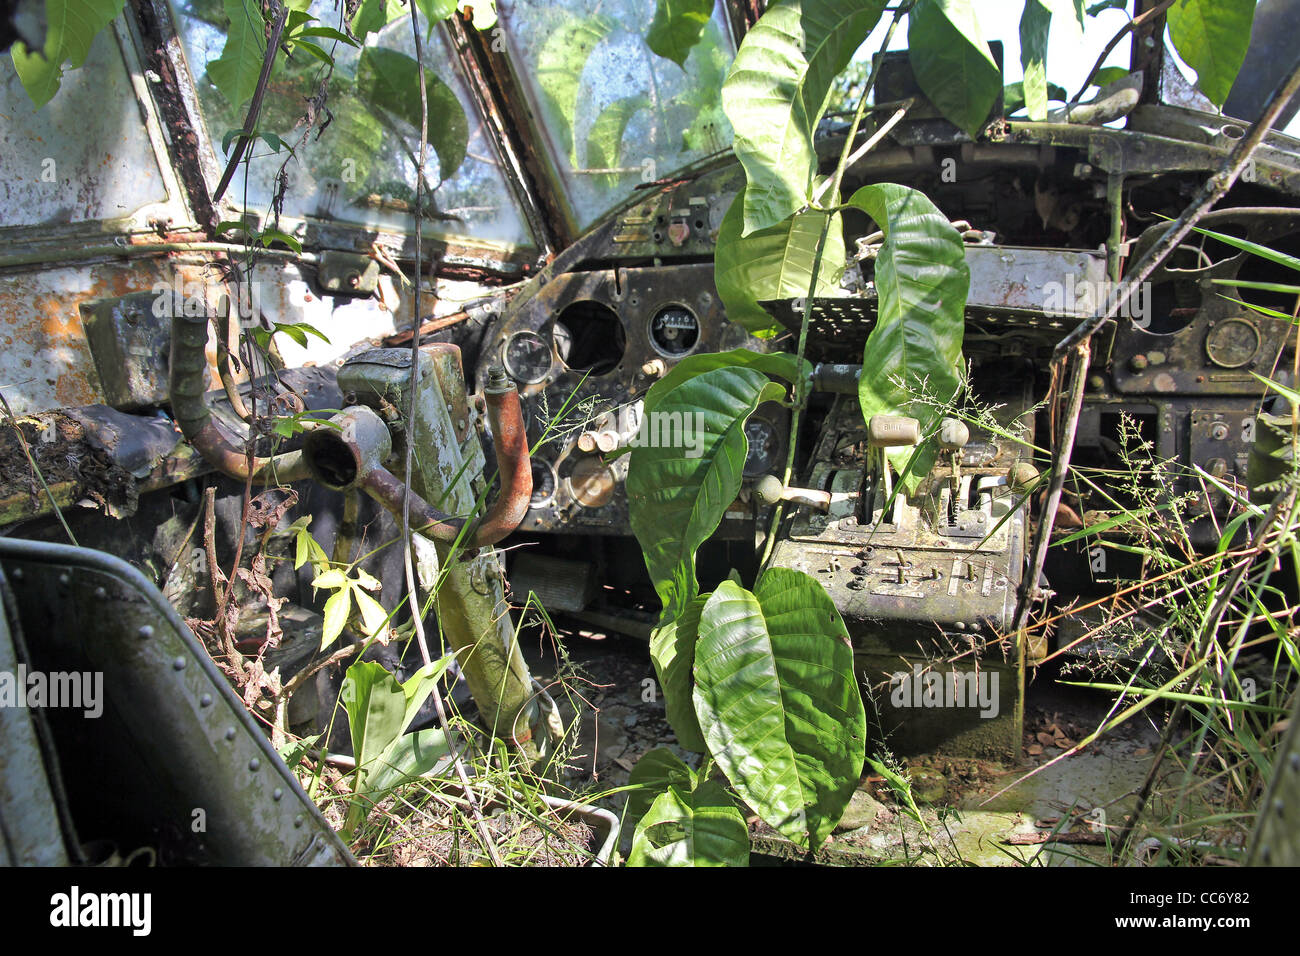 Interieur Cockpit-Ansicht des abgestürzten russisches Flugzeug im  peruanischen Amazonas-Reben und Pflanzen wachsen außer Kontrolle  Stockfotografie - Alamy